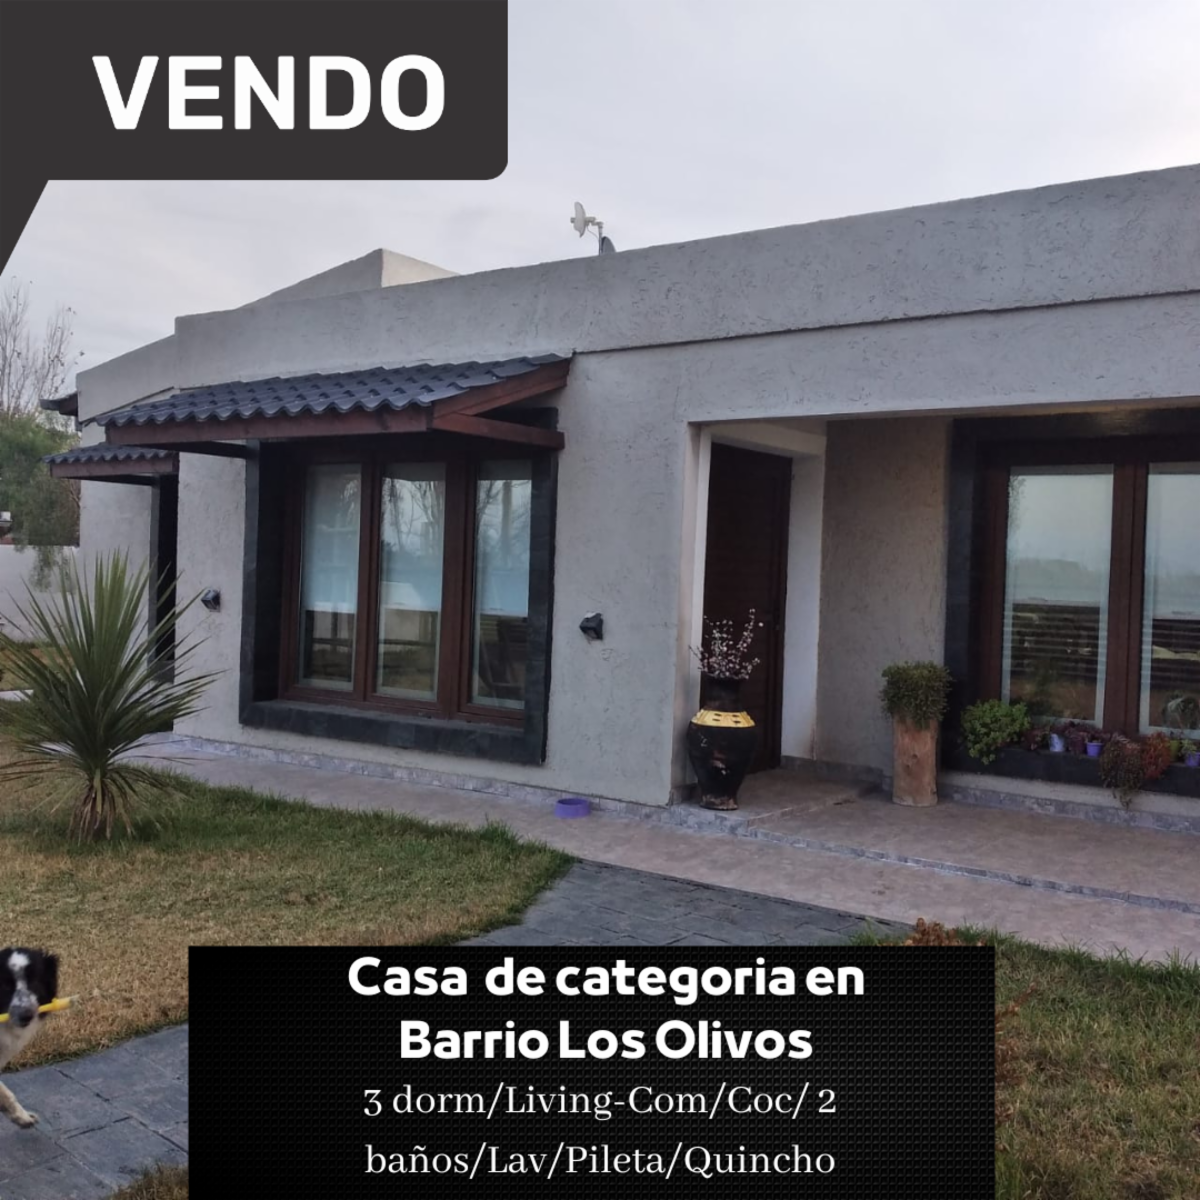 VENDEMOS CASA DE CATEGORIA BARRIO LOS OLIVOS 900mts² TOTALES